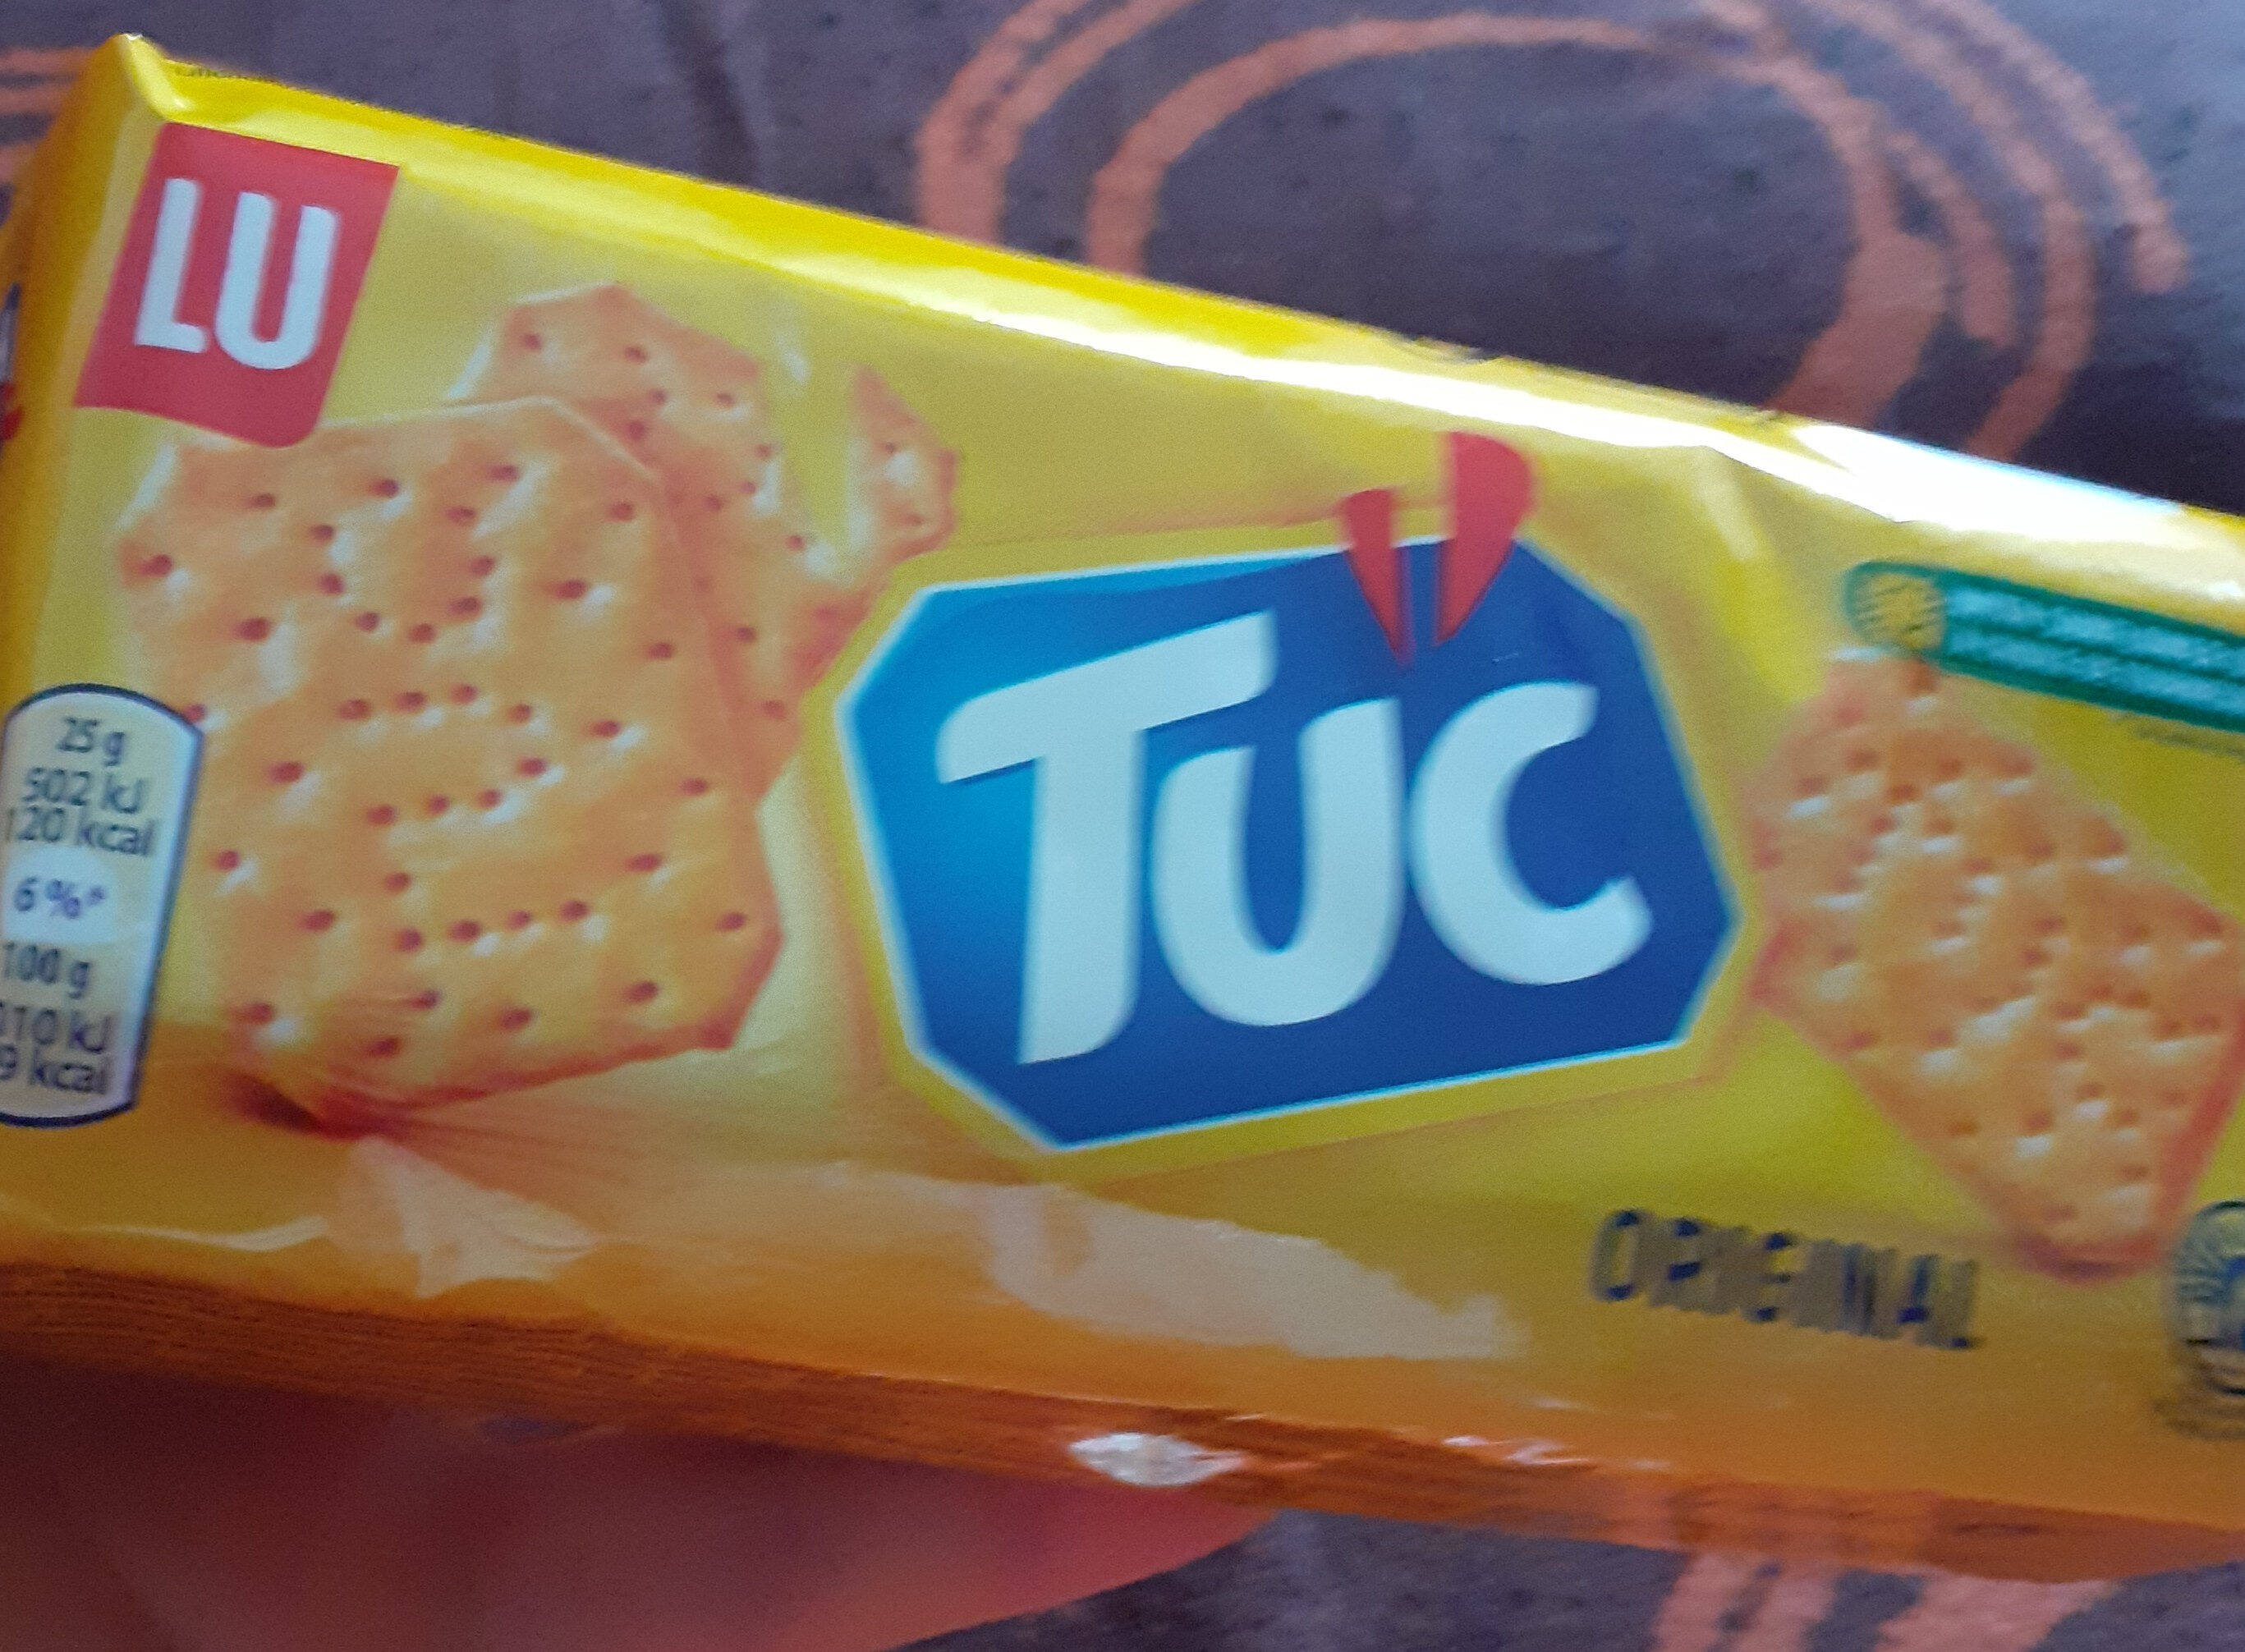 Snacks, TUC Original - Product